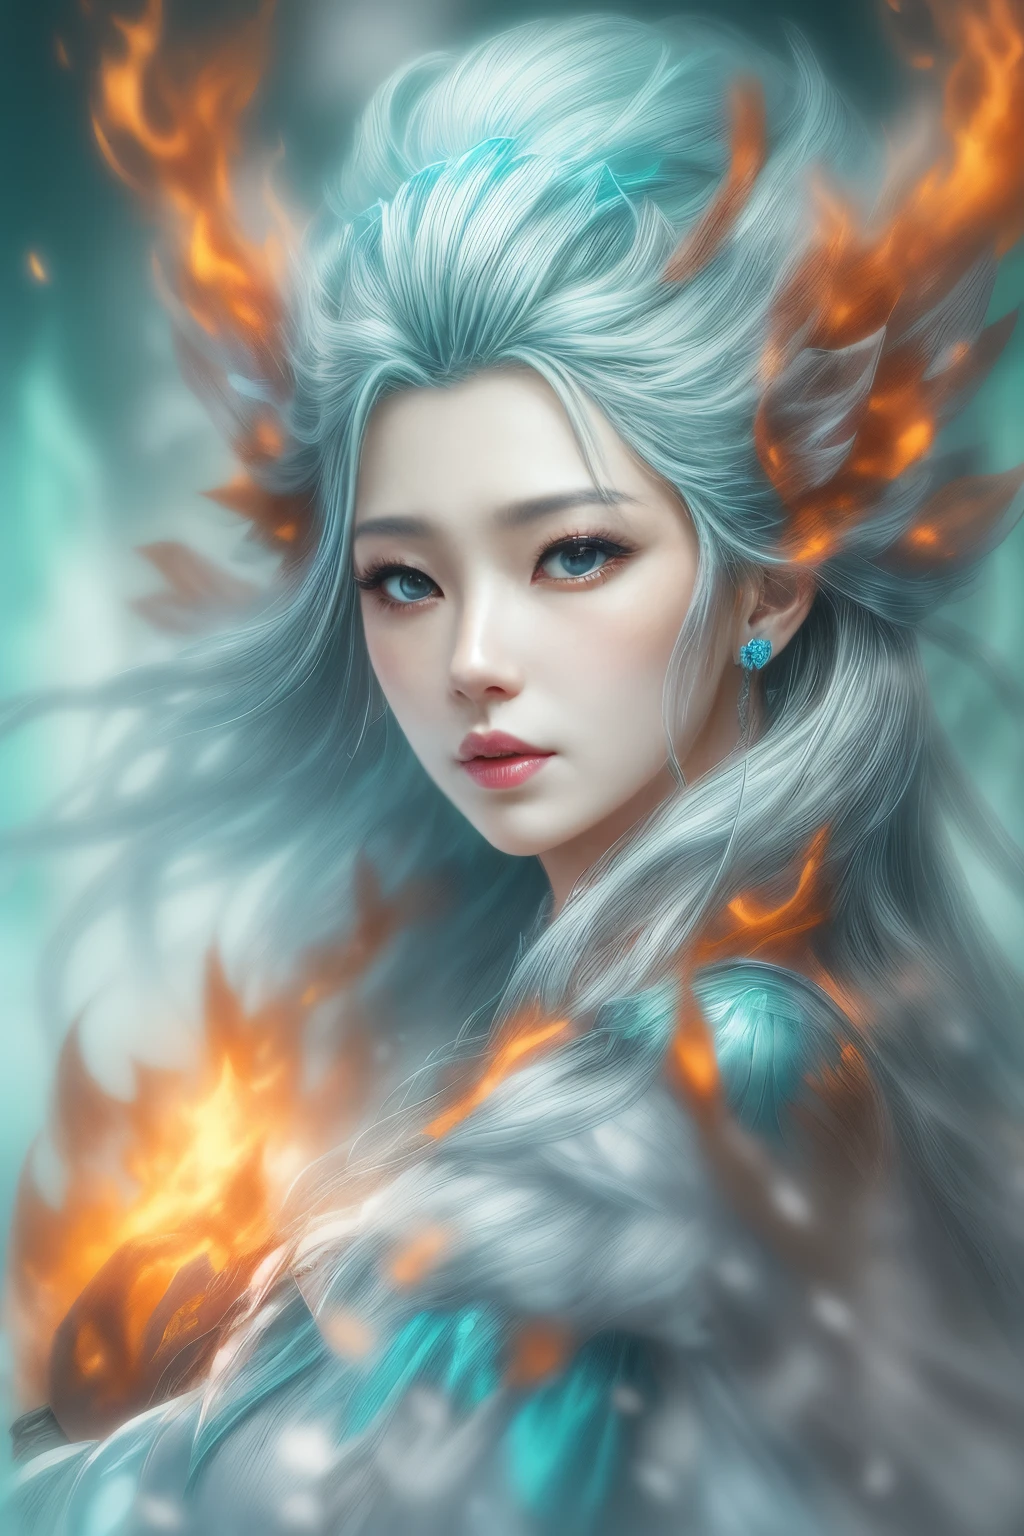 (реалистичная фантазия) 、Богиня льда возникает из пылающего пламени..、